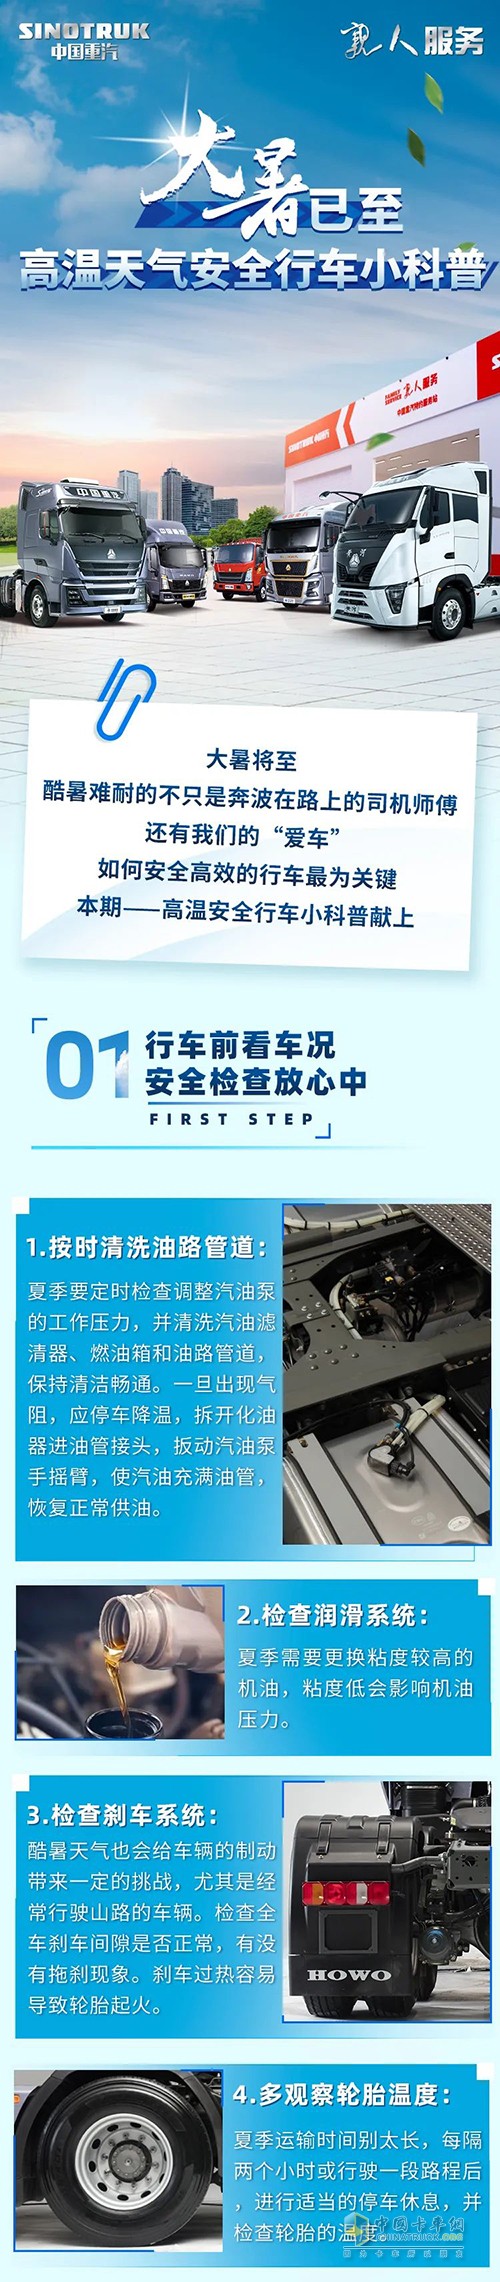 中国重汽 高温天气 安全行车 小科普